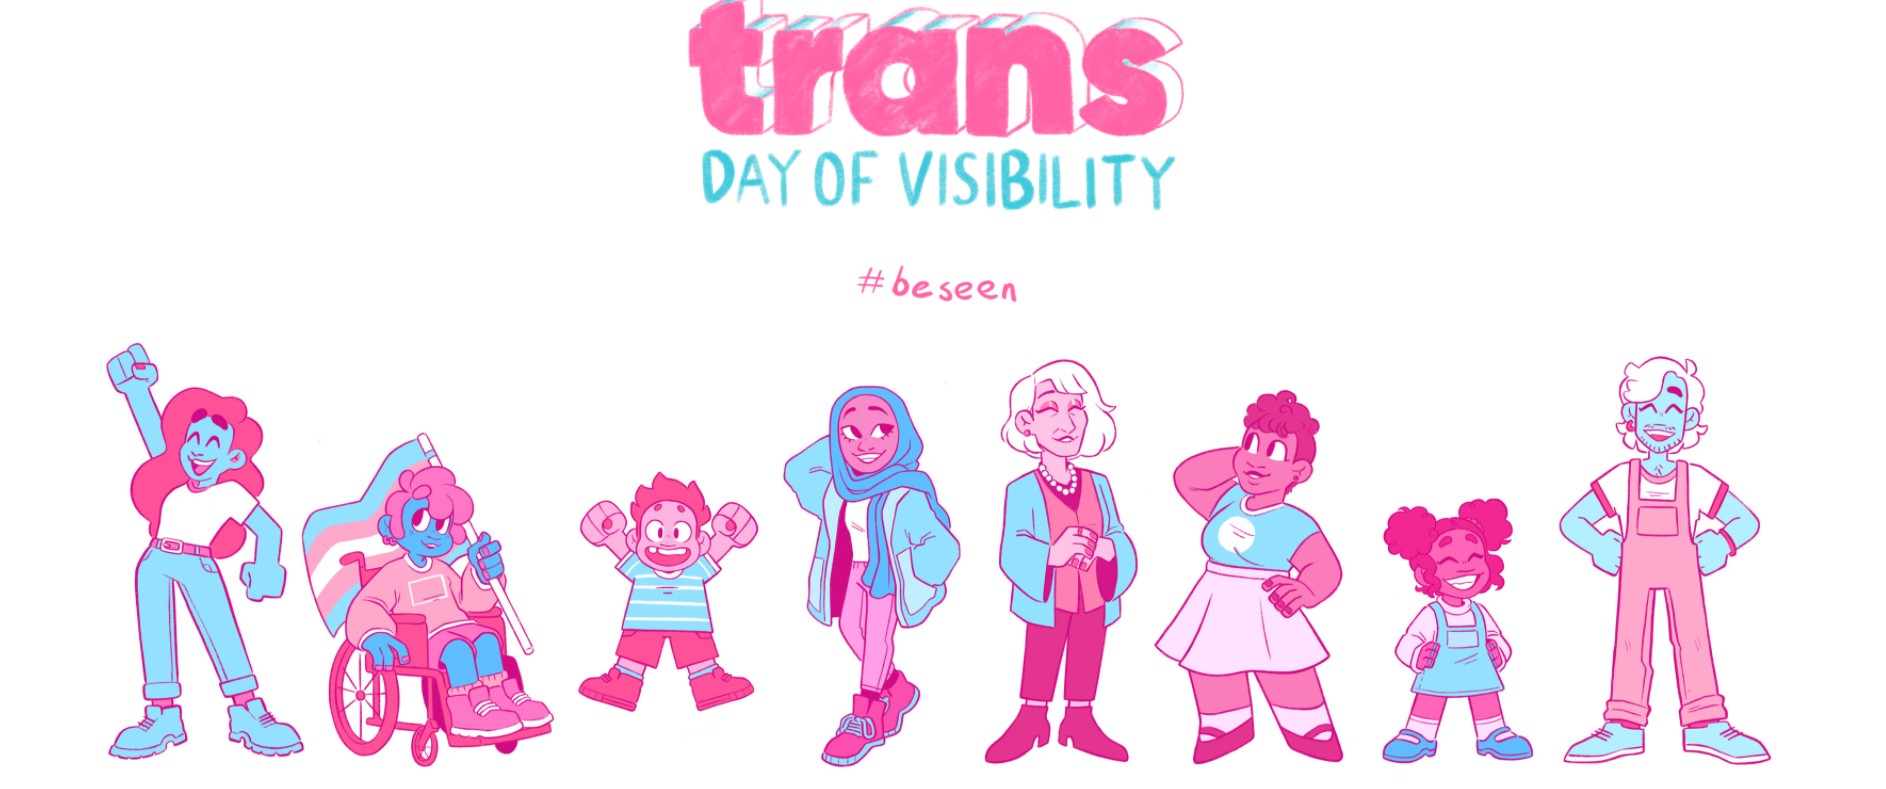 31 Mart Uluslararası Trans Görünürlük Günü kutlu olsun! Kaos GL - LGBTİ+ Haber Portalı